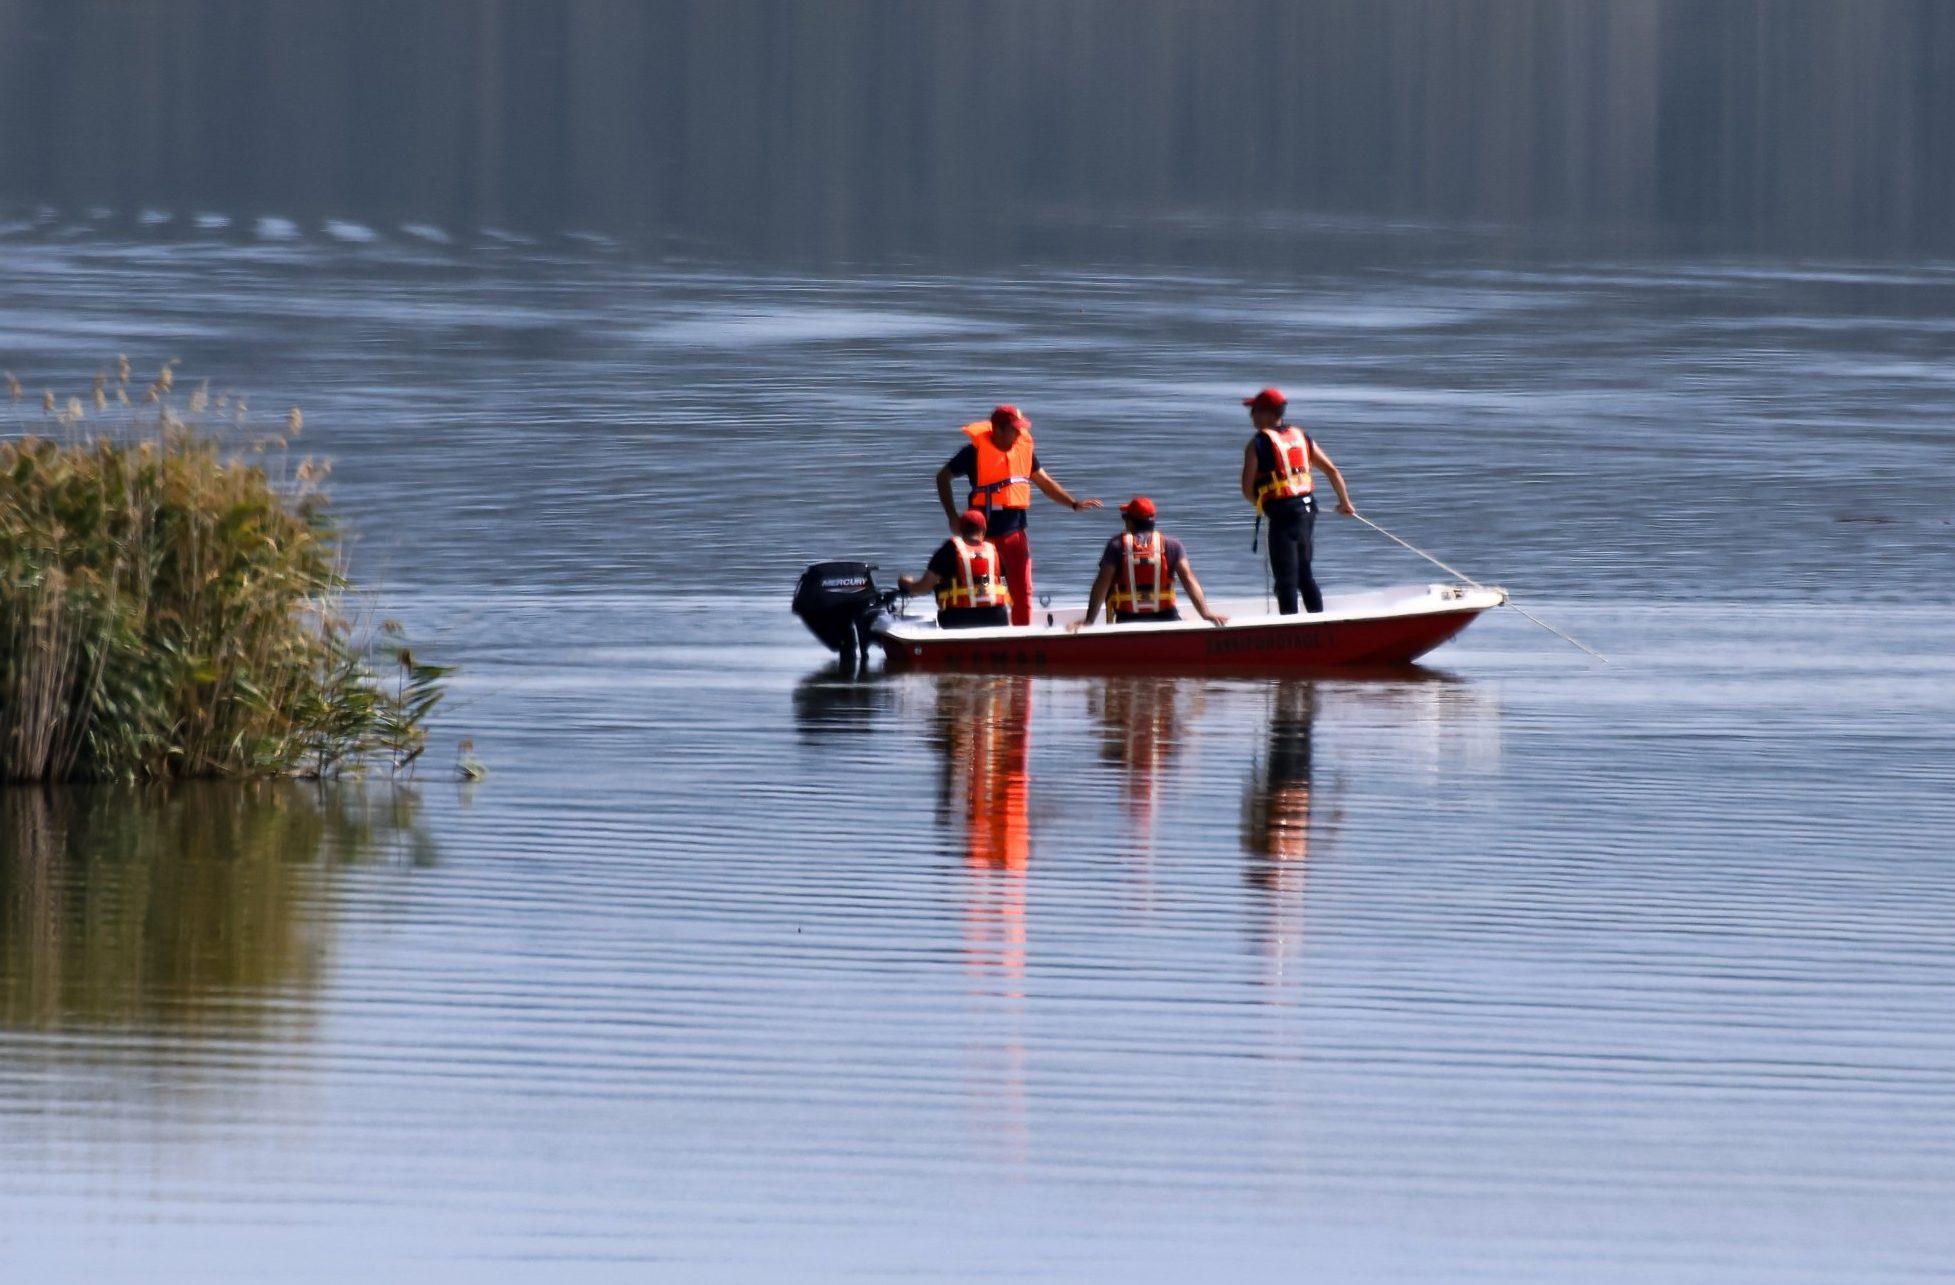 Λίμνη Κάρλα: Βρέθηκε η βάρκα του αγνοούμενου ψαρά – Συνεχίζονται οι έρευνες για τον ίδιο